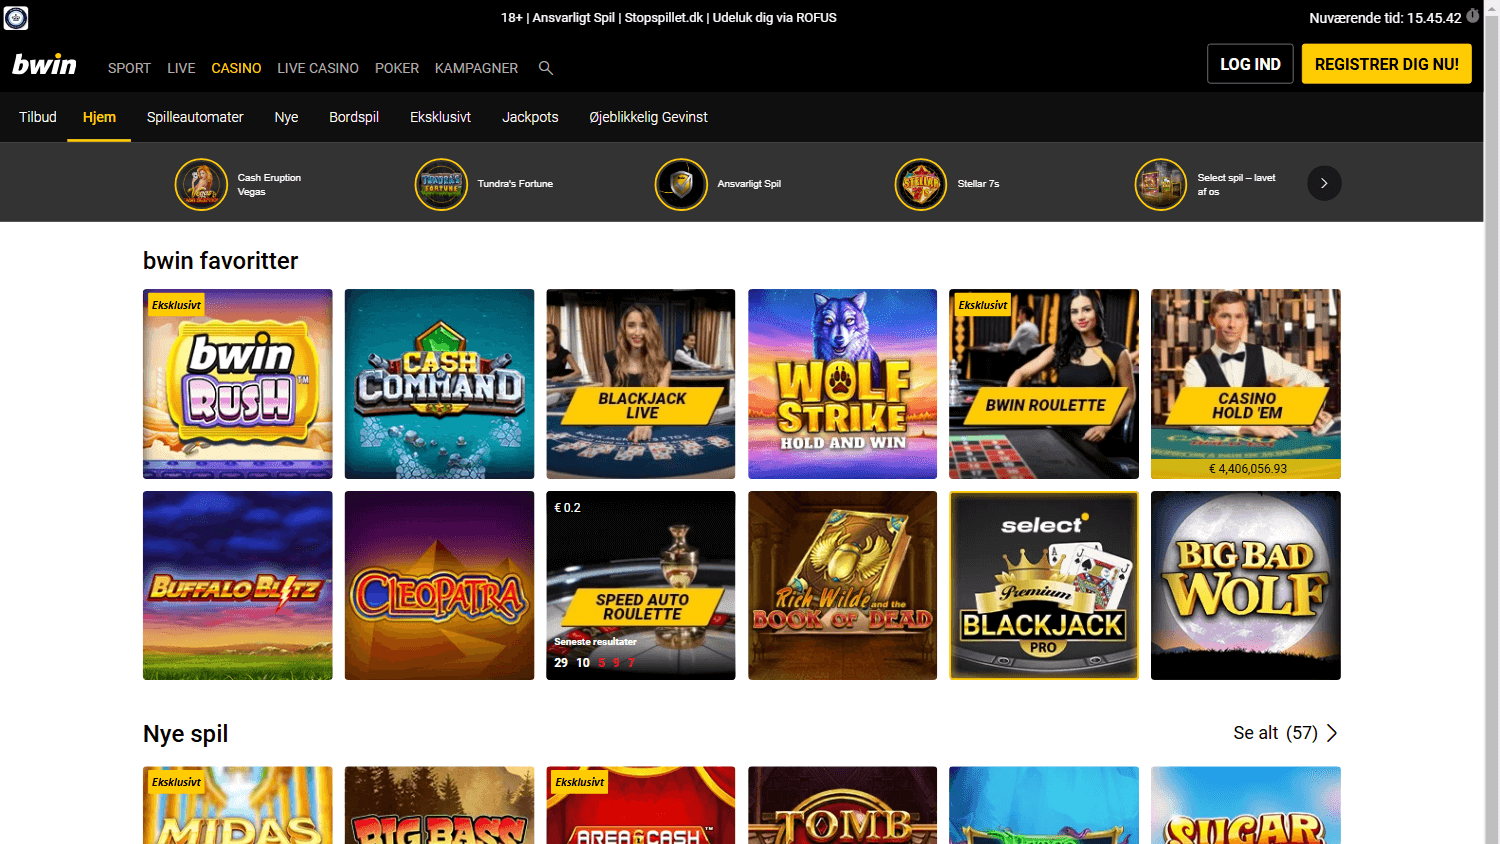 bwin_casino_dk_homepage_desktop